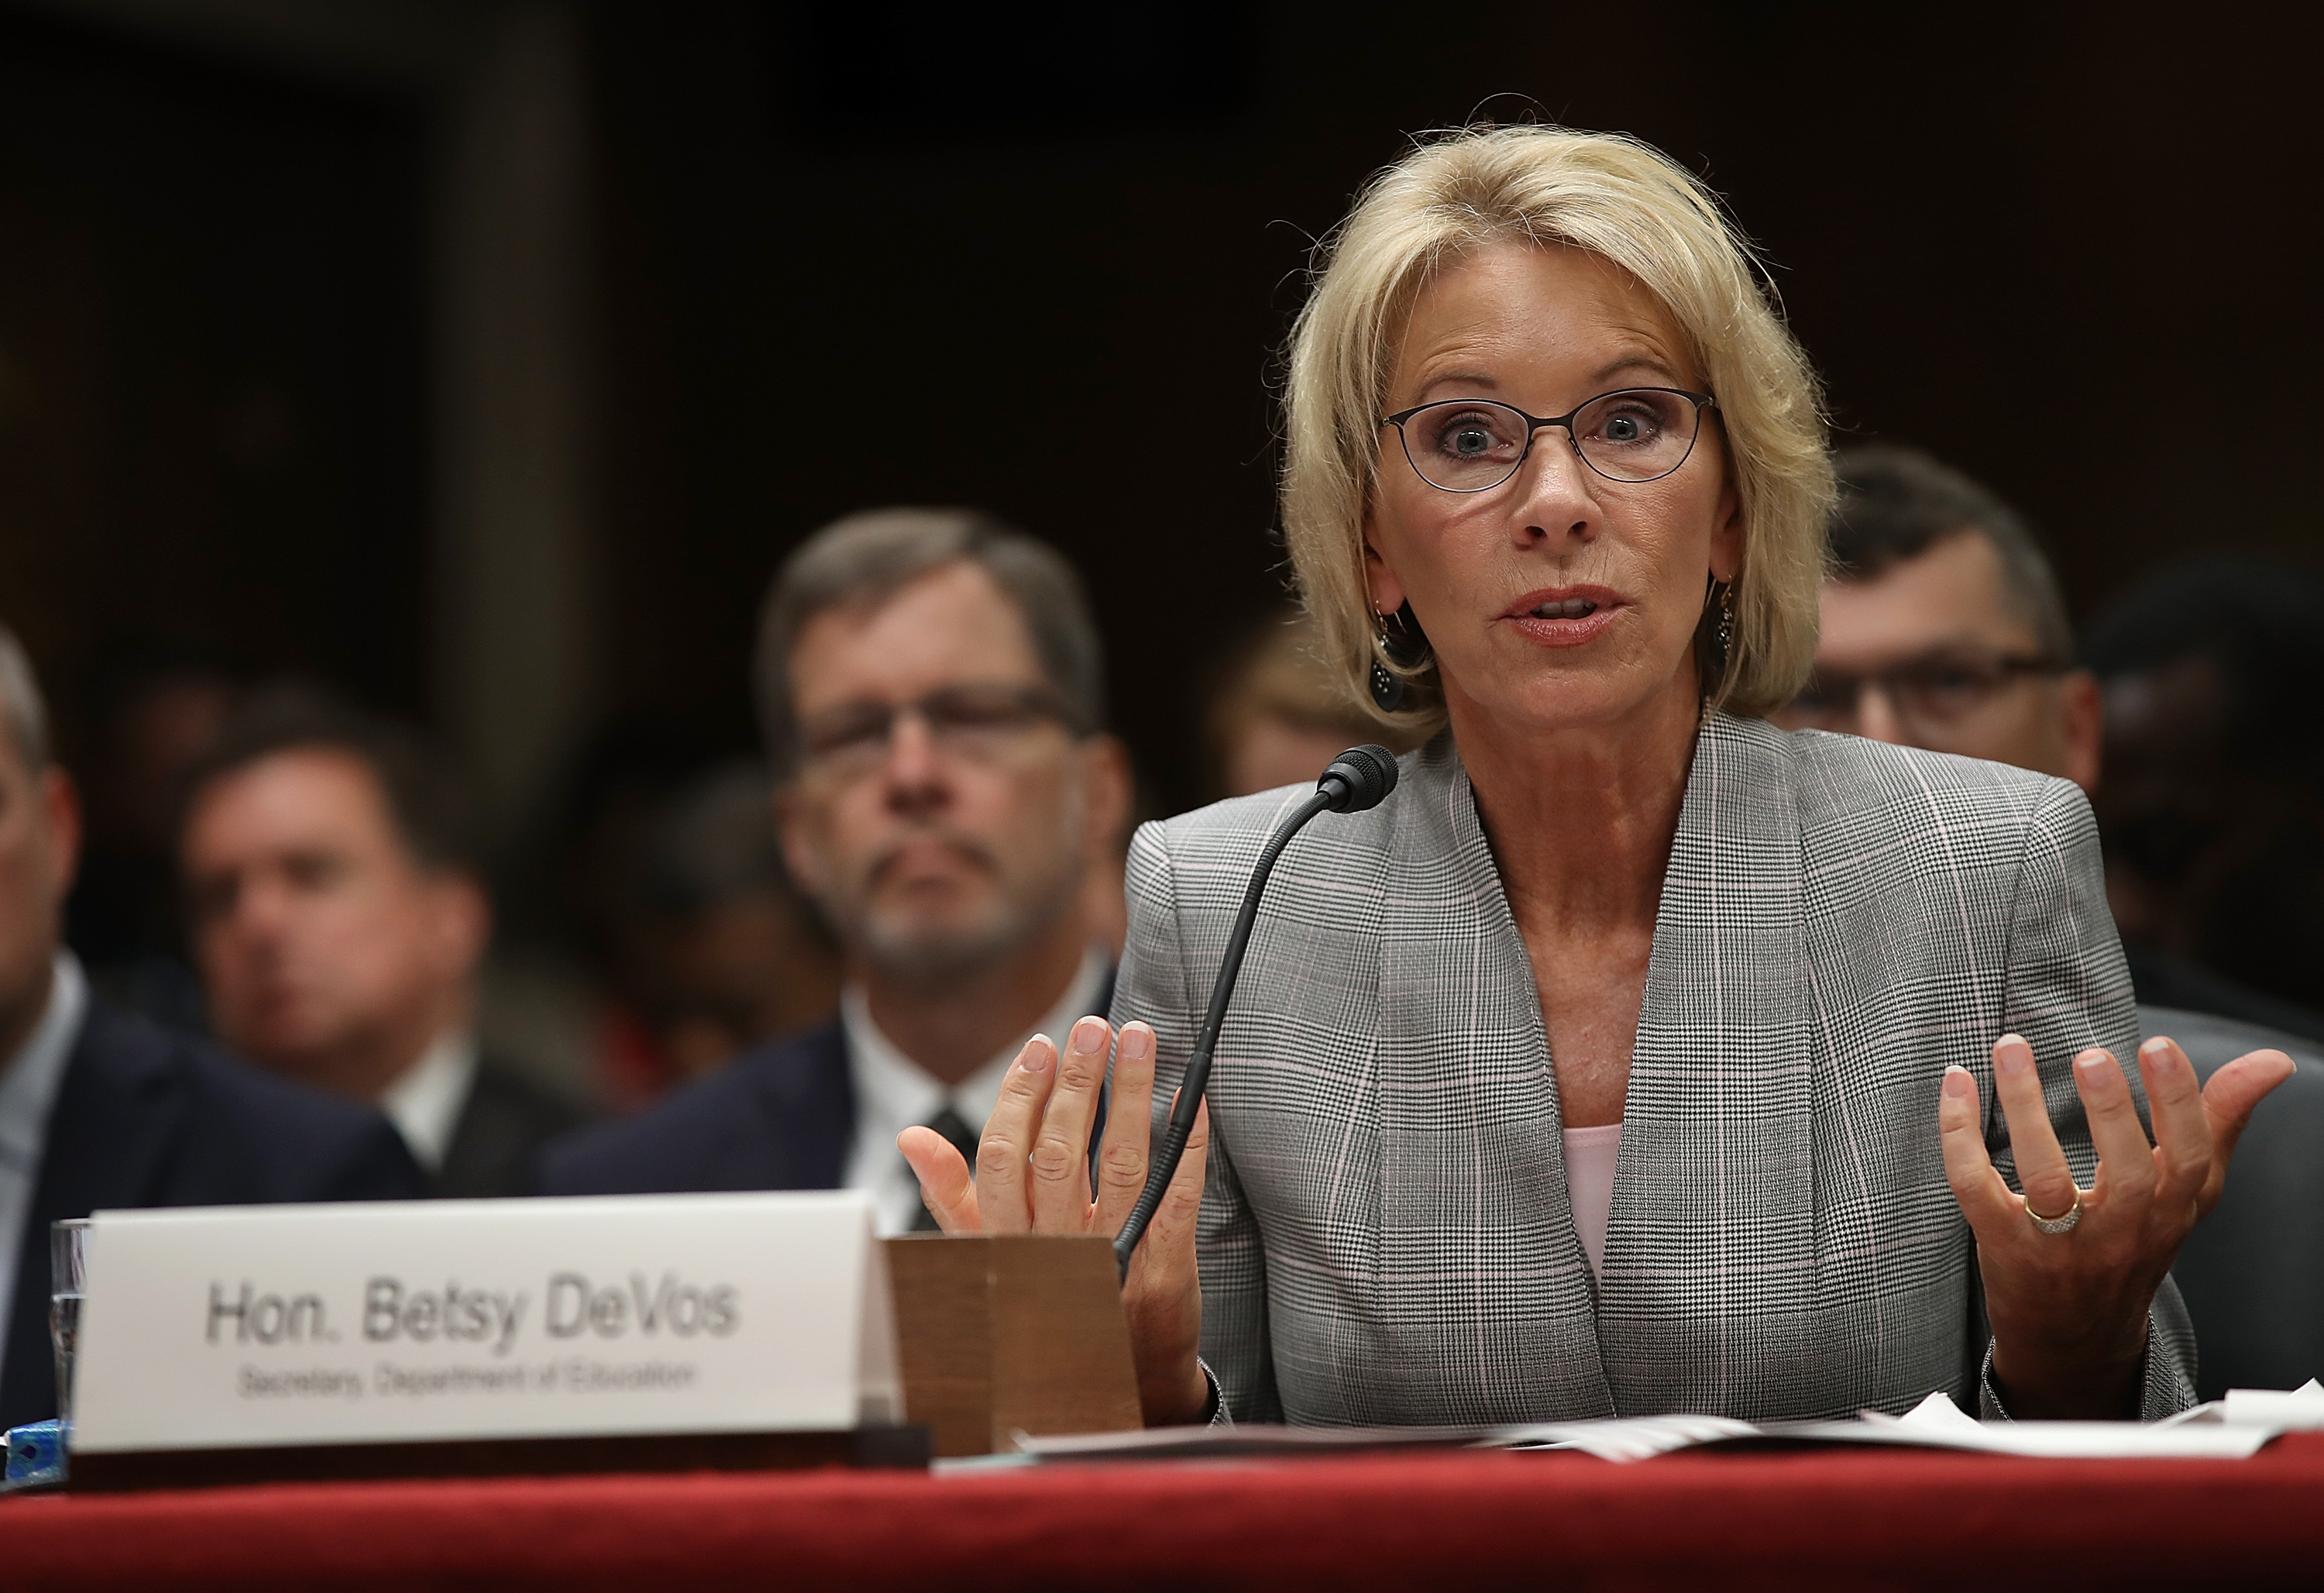 Lemondott Betsy Devos, Trump oktatási minisztere